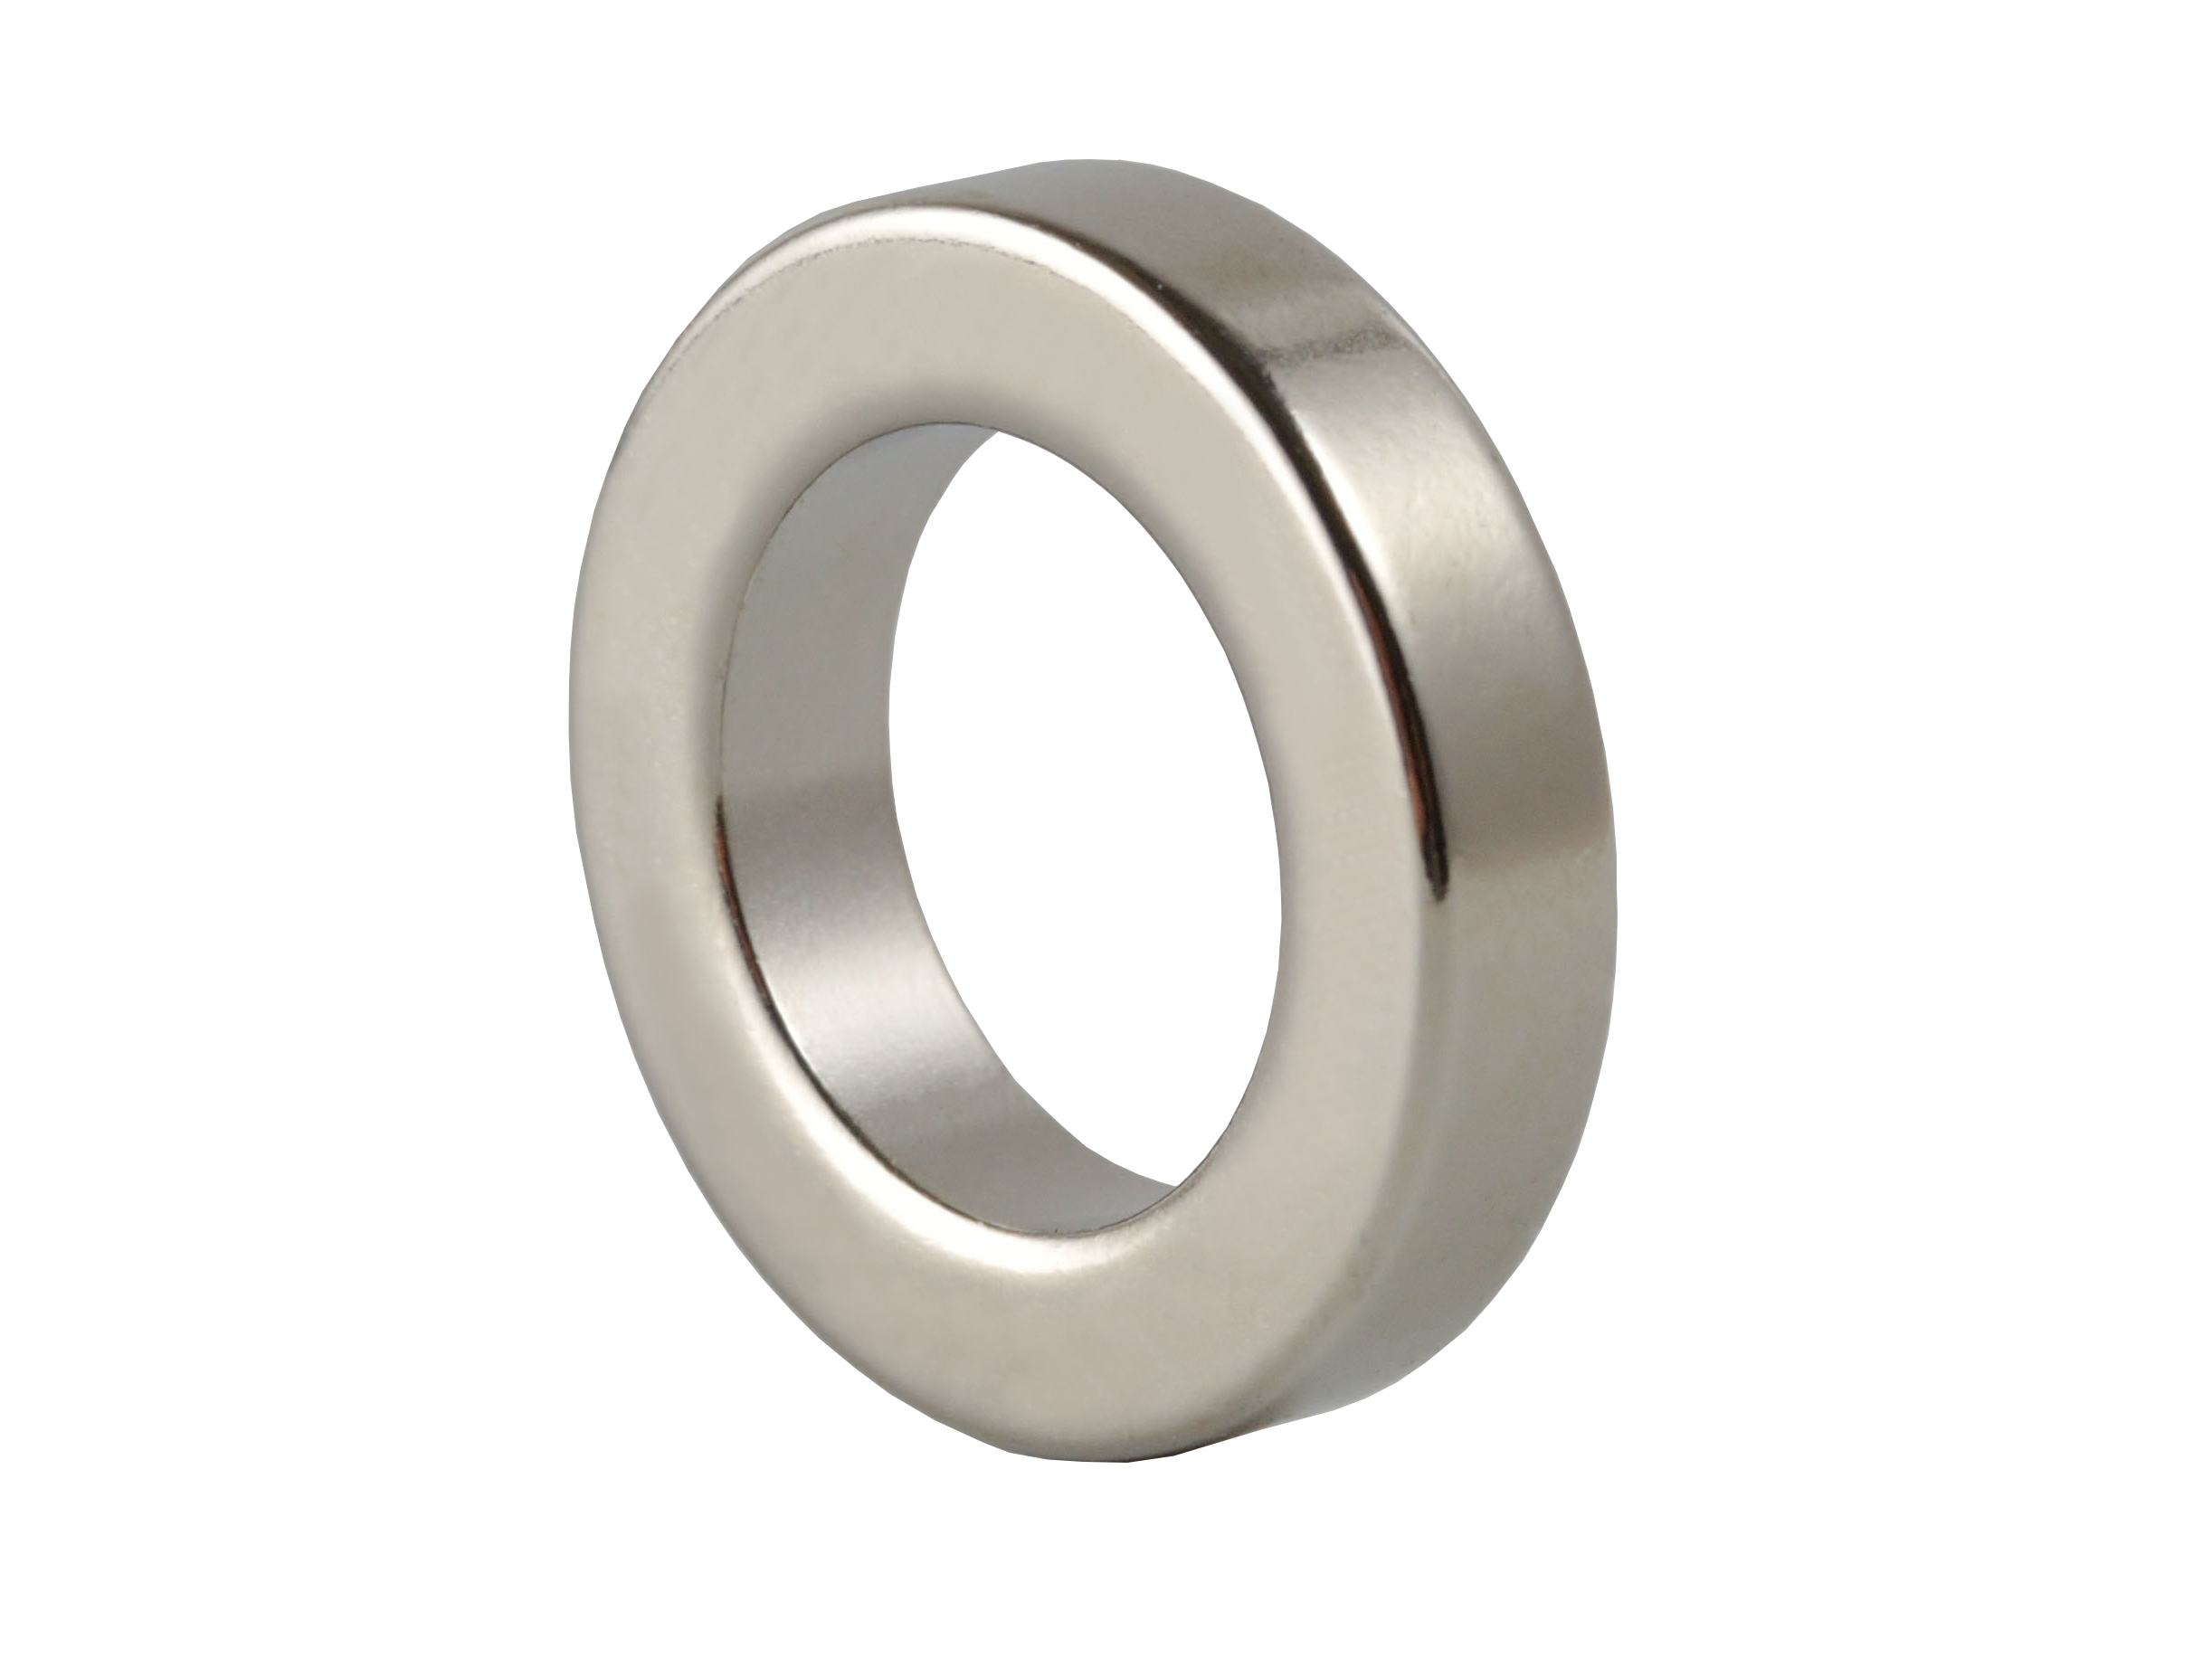 Ring‑Shaped Neodymium Magnet (NOR018) 